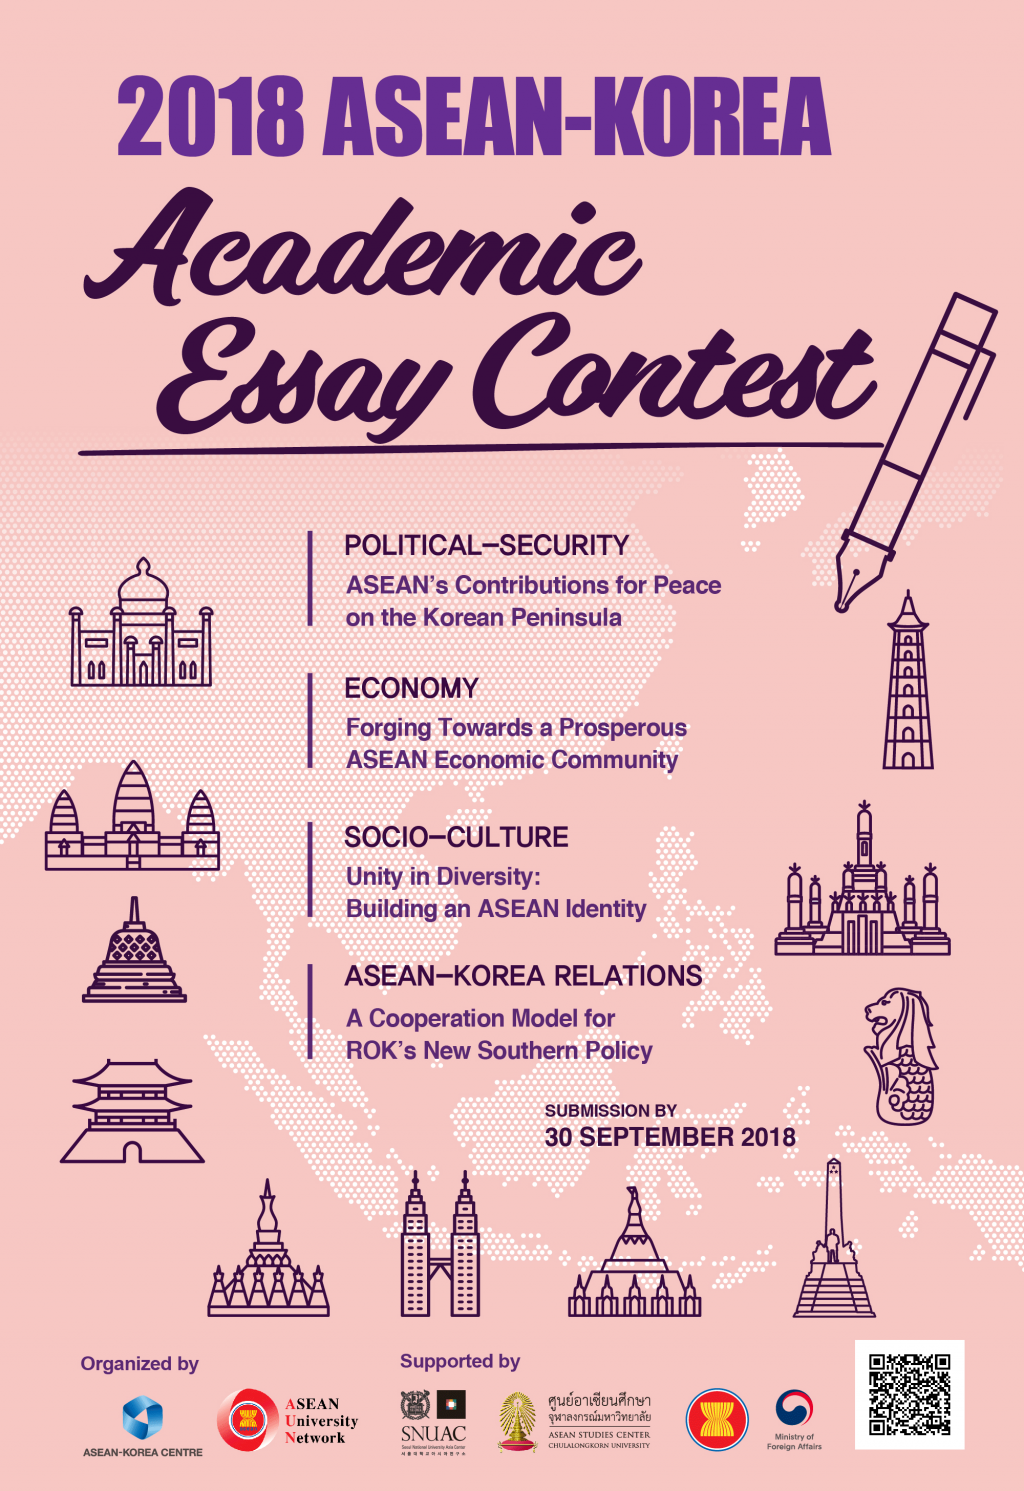 2018 ASEAN-Korea Academic Essay Contest